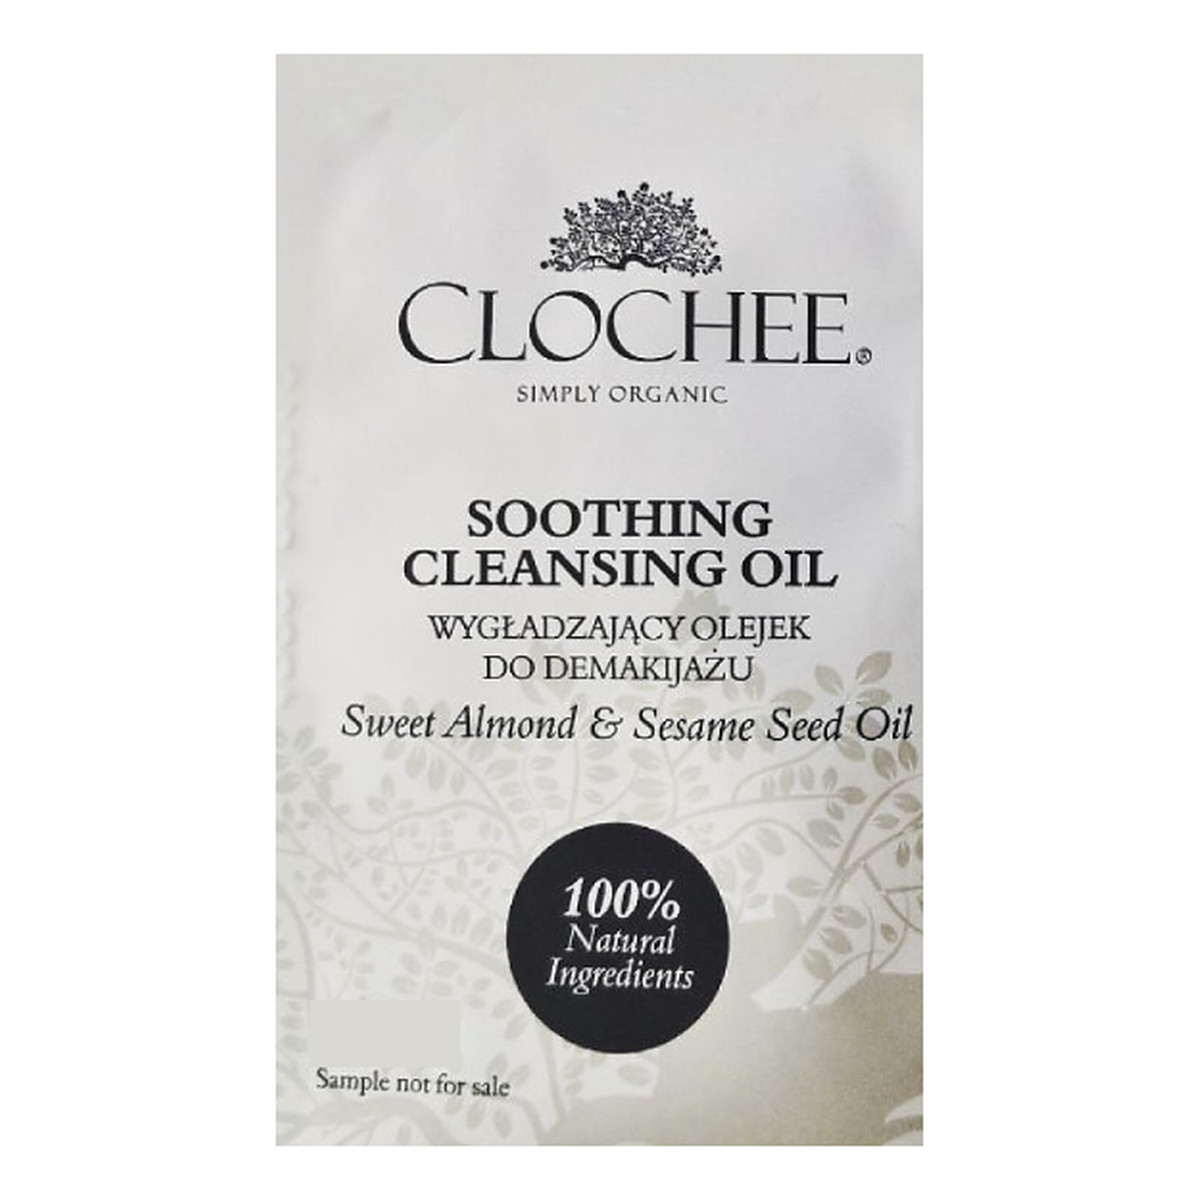 Clochee Soothing Cleansing Oil wygładzający olejek do demakijażu Sweet Almong & Sesame Seed Oil próbka Nieaktualne zdjęcie 3ml